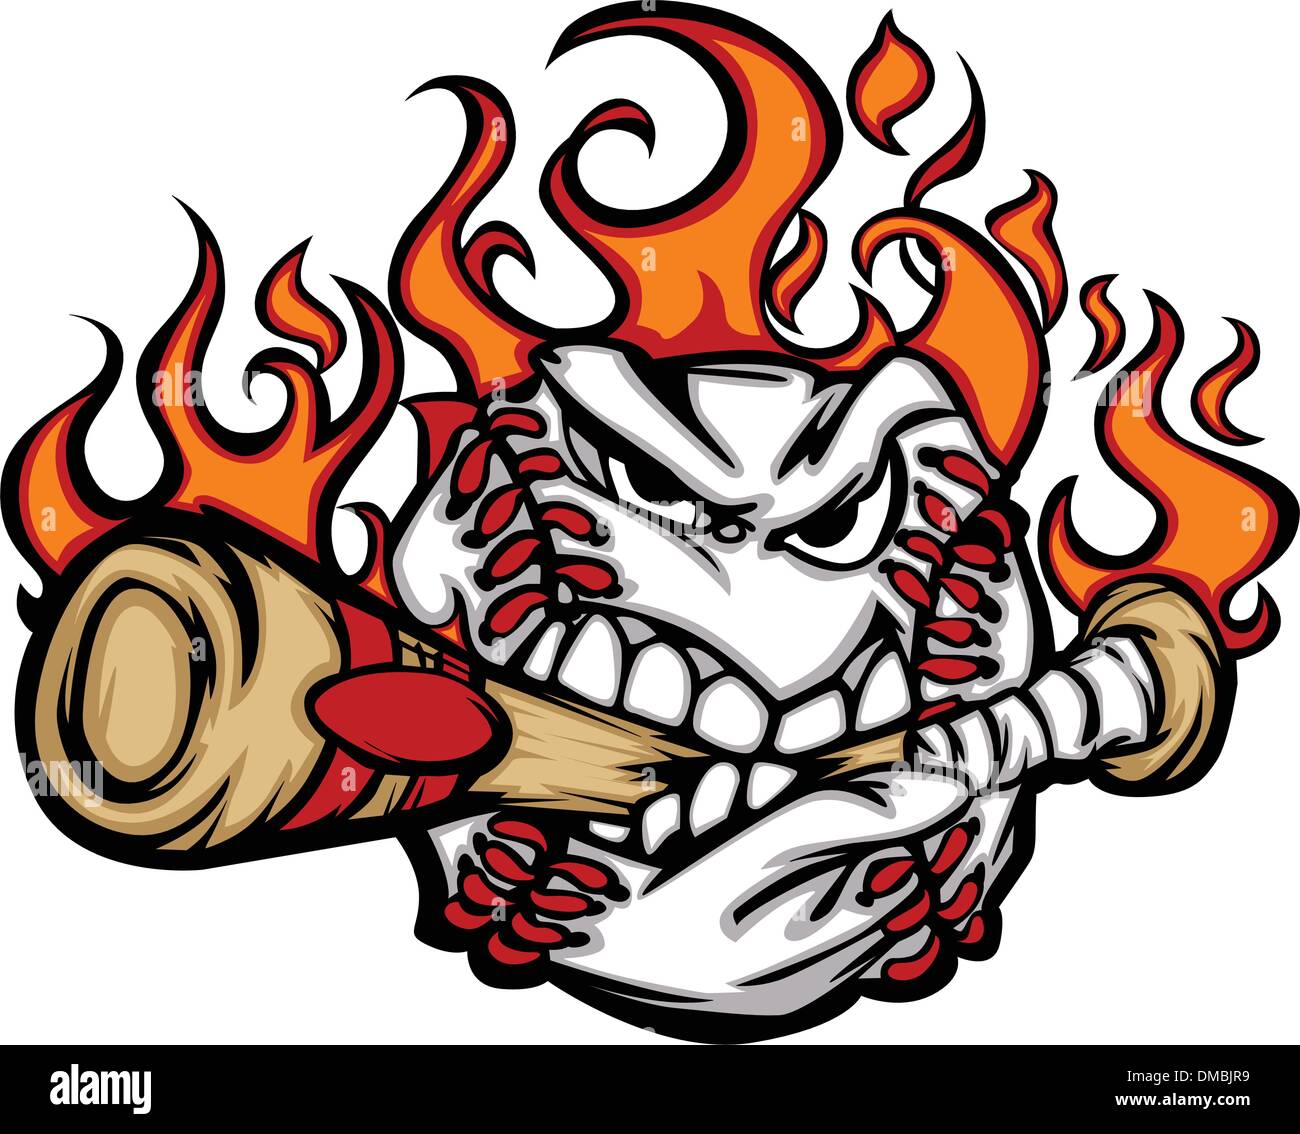 Baseball Flaming Face Biting Bat Vector Image Stock Vector